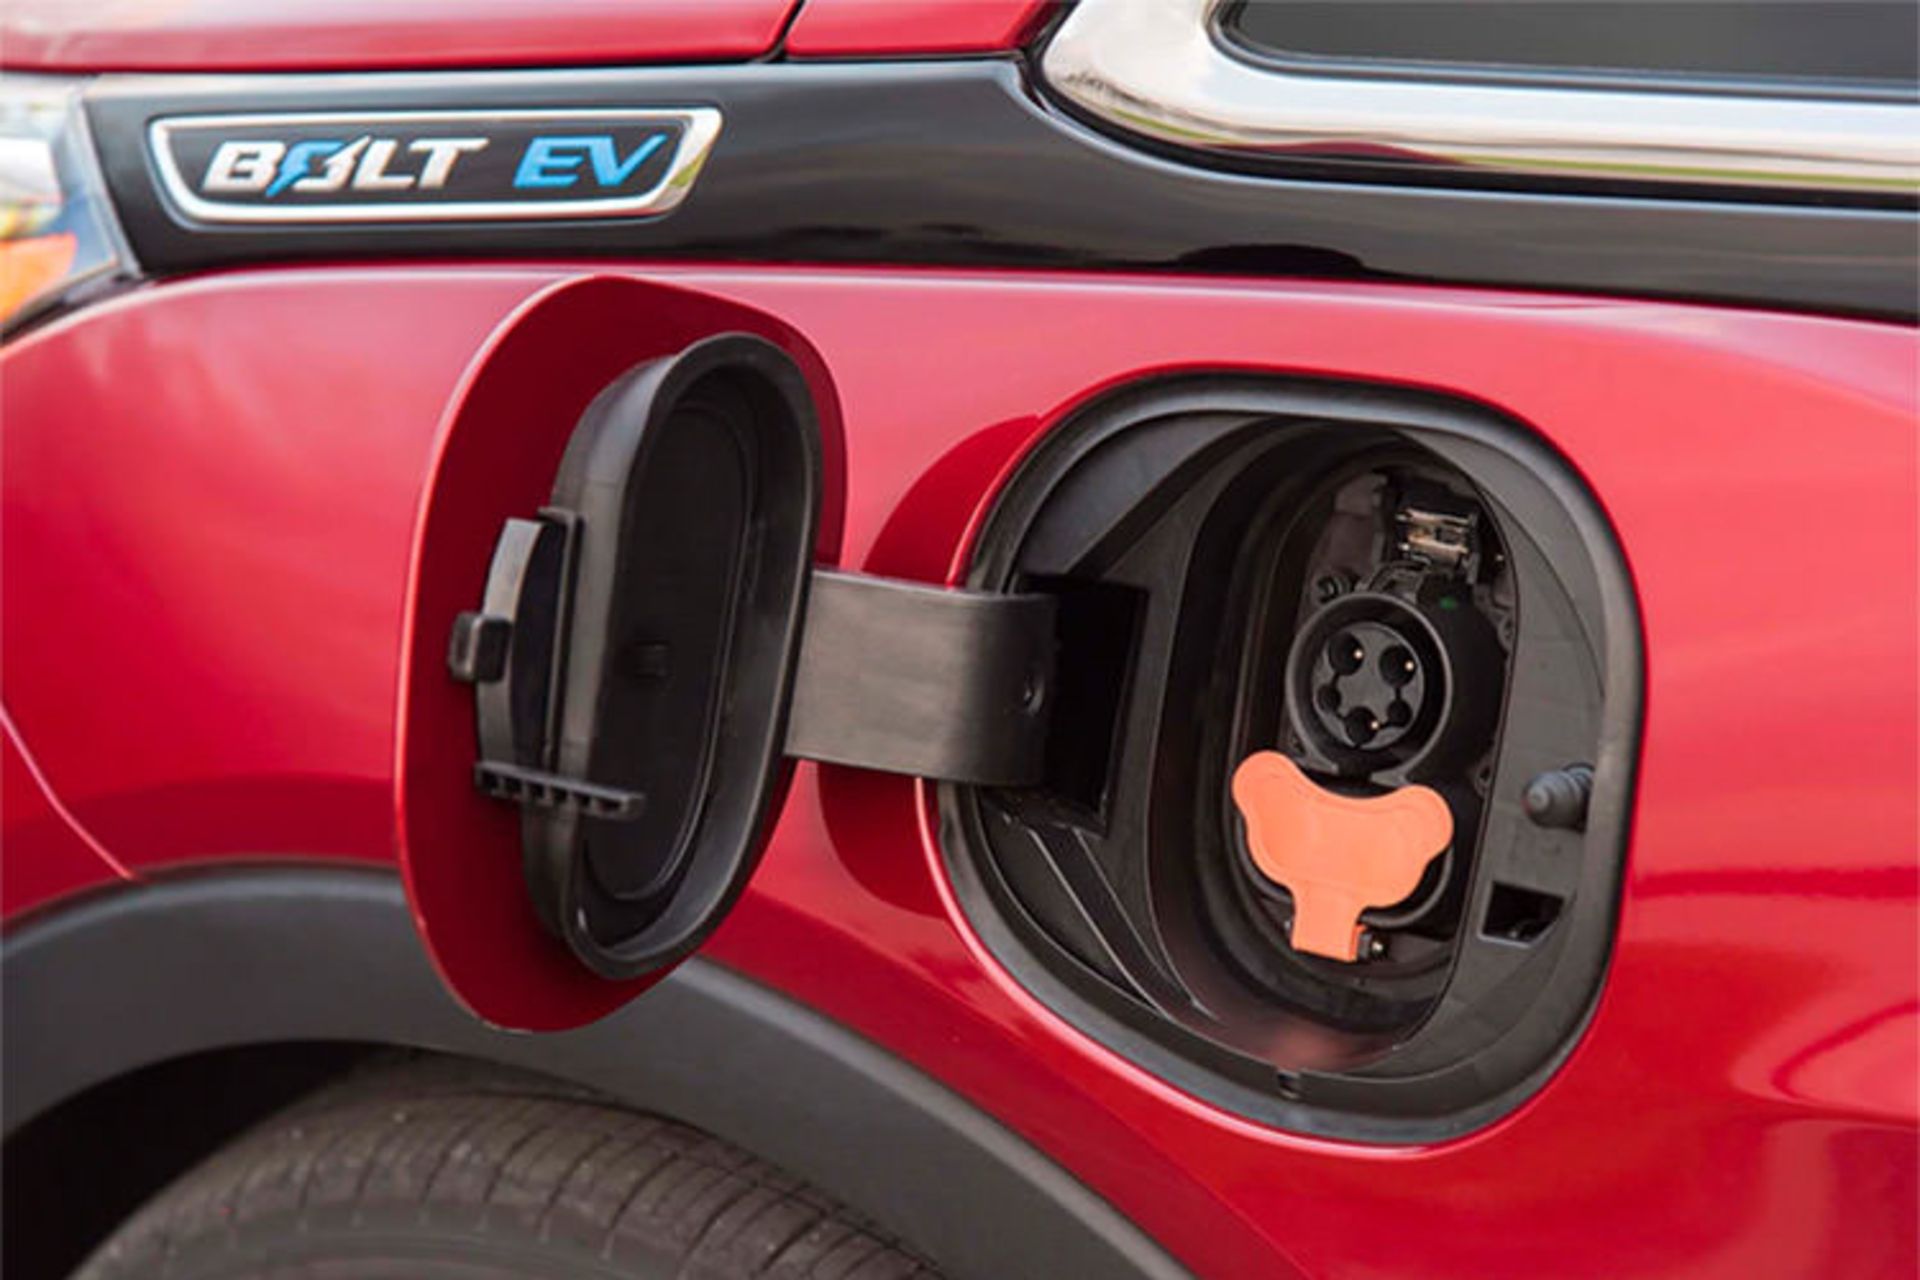 مرجع متخصصين ايران electric car battery charger / شارژر باتري خودروي الكتريكي